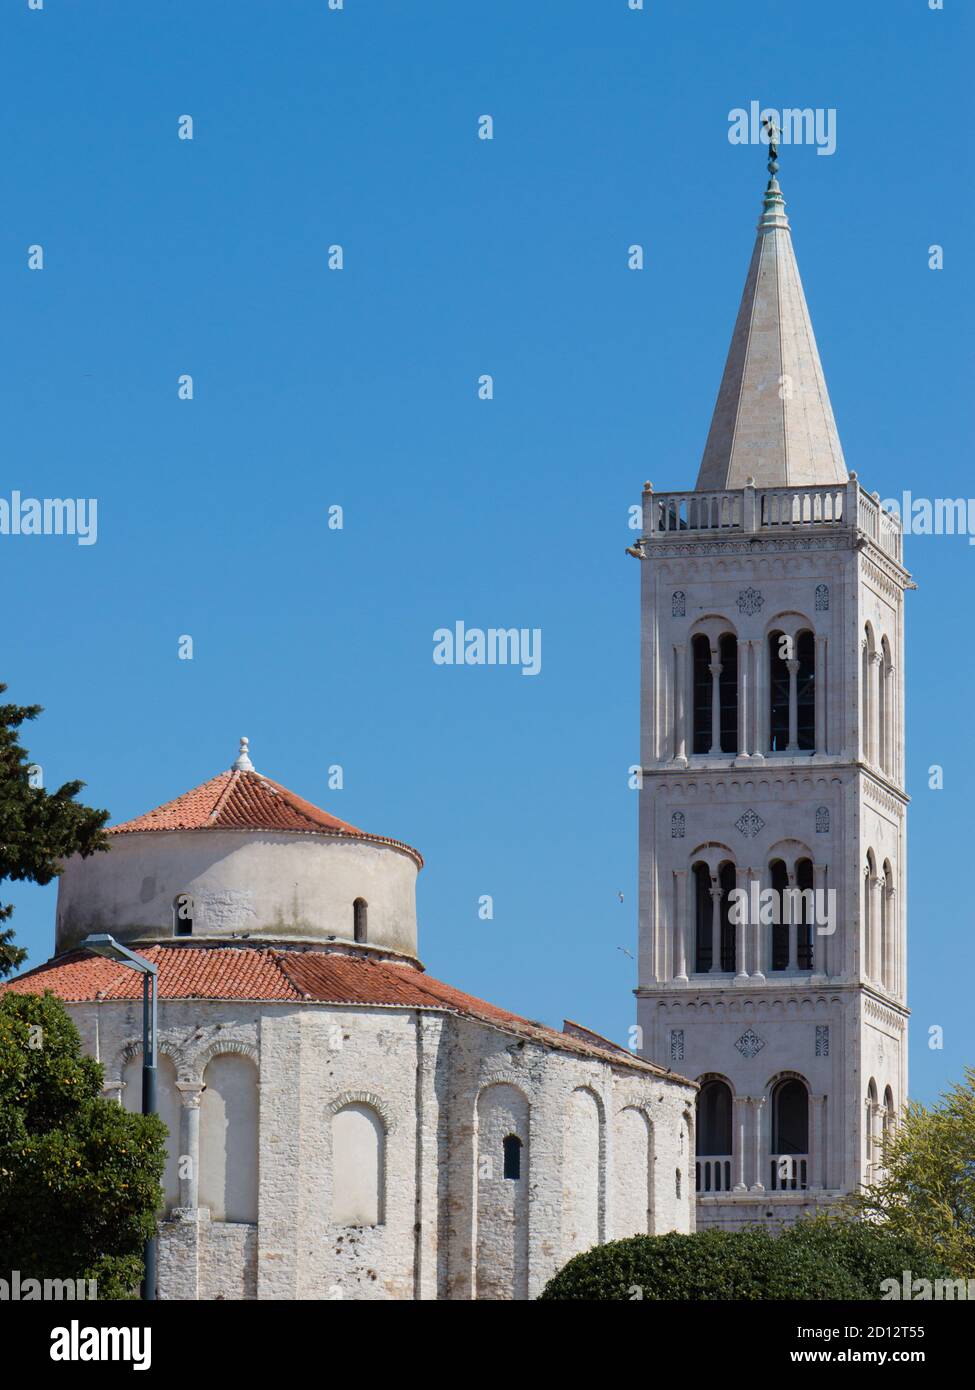 Famoso simbolo della bellissima città di Zara in Croazia, antica chiesa bizantina di San Donato e il campanile in stile romanico Foto Stock